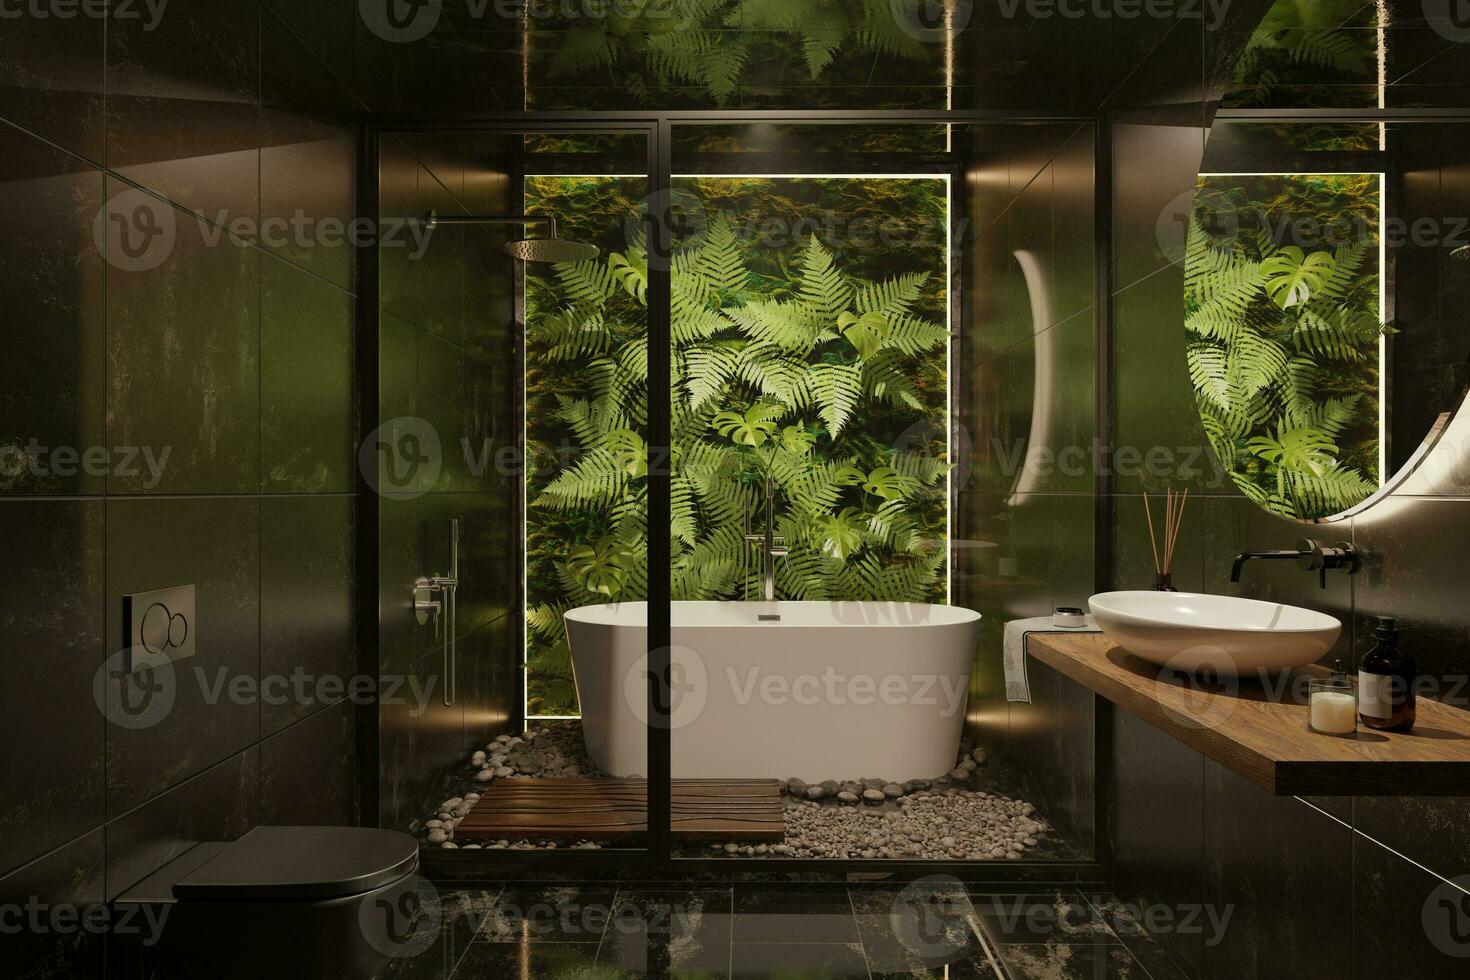 3d tolkning av badrum interiör, svart toalett, mörk design, minimalism, modern klassiker kombinerad med tropisk växter, natur, löv på de vägg, eco stil, trend foto